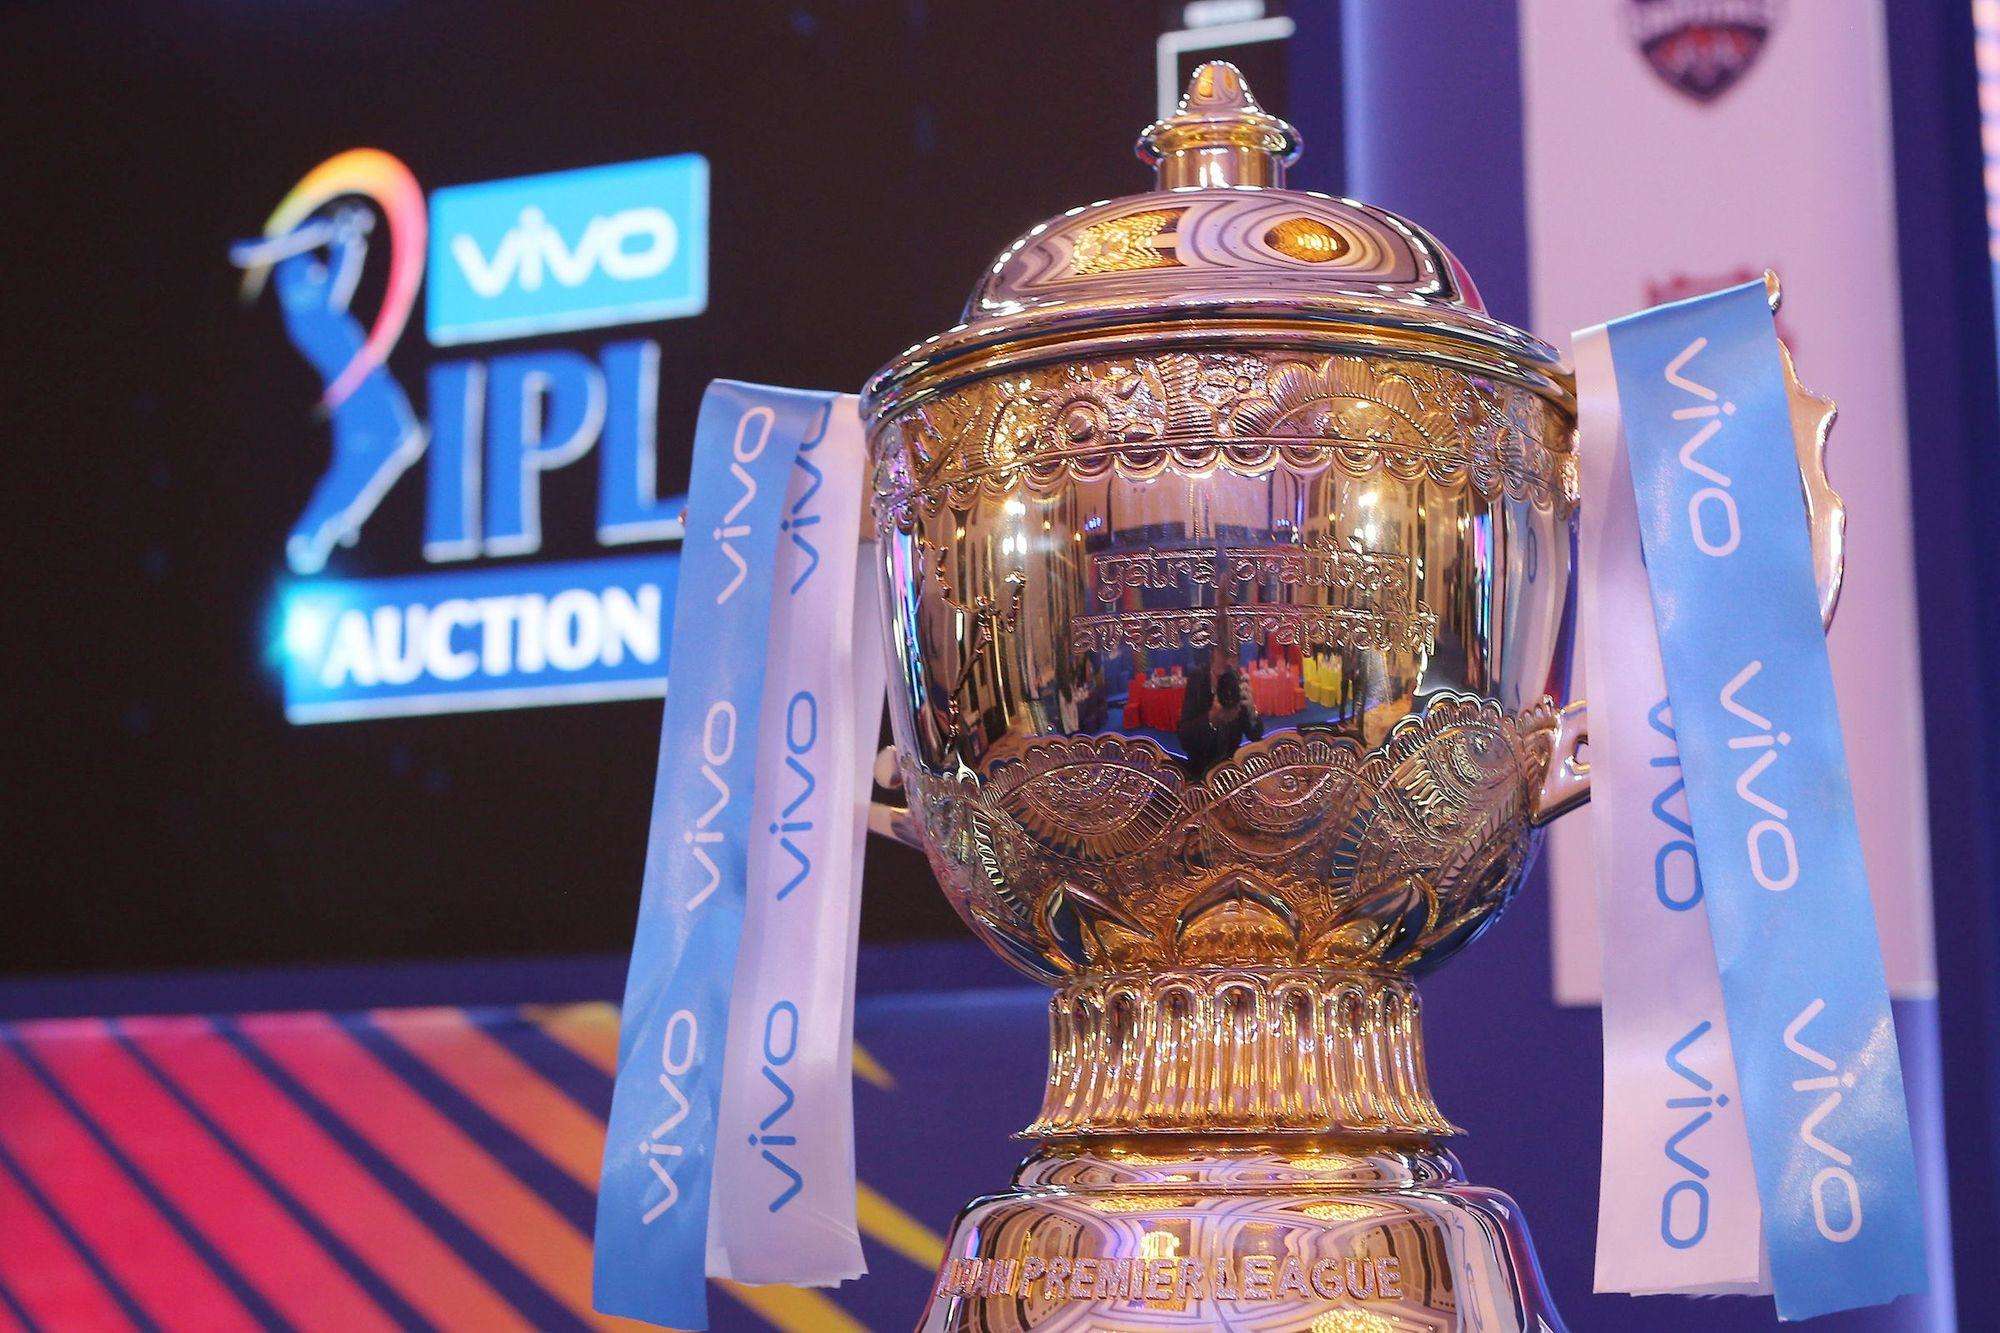 इन आईपीएल टीमों में से कौन जीतेगा साल 2020 का खिताब, जानिए